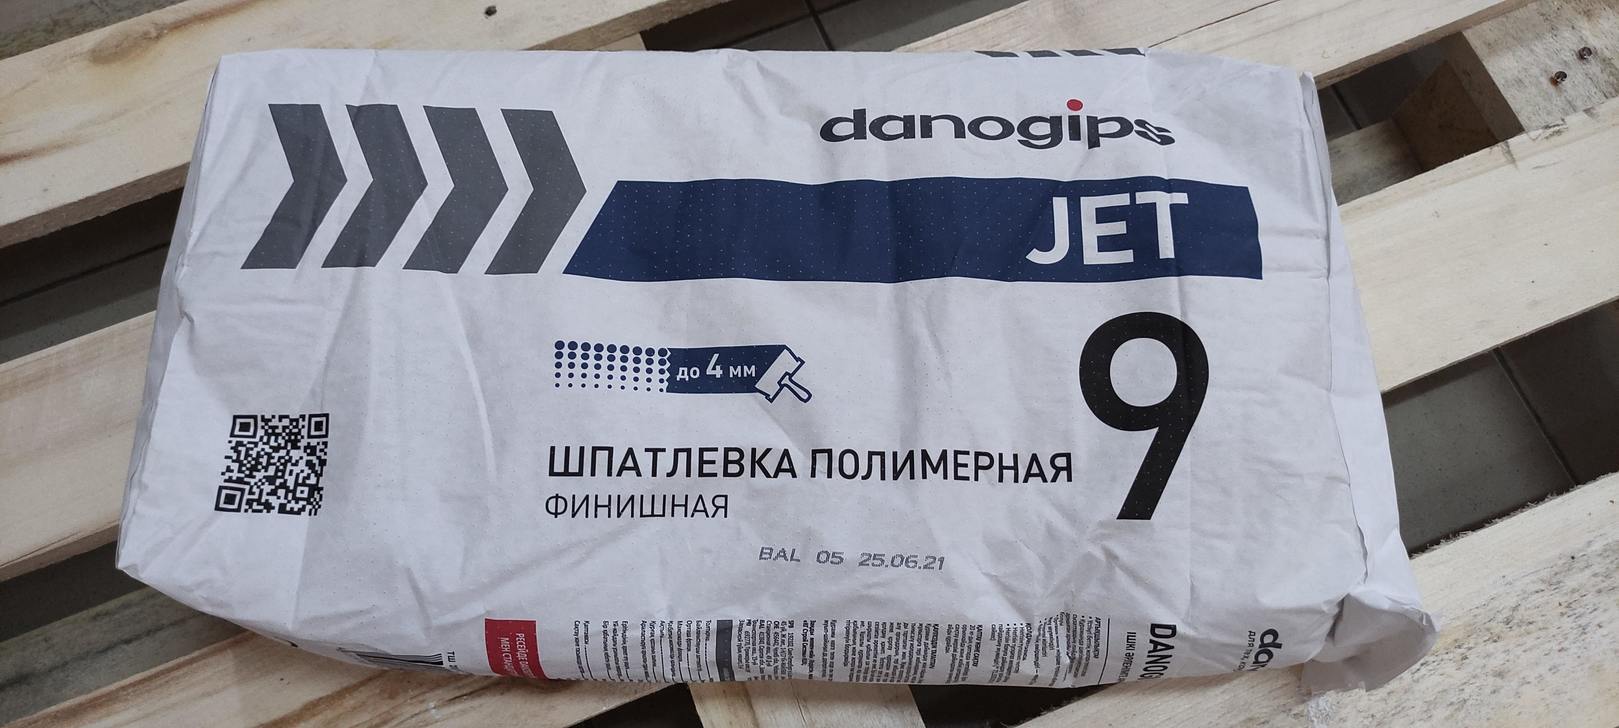 Шпатлевка полимерная финишная danogips JET 9 / Даногипс Джет 9 20 кг